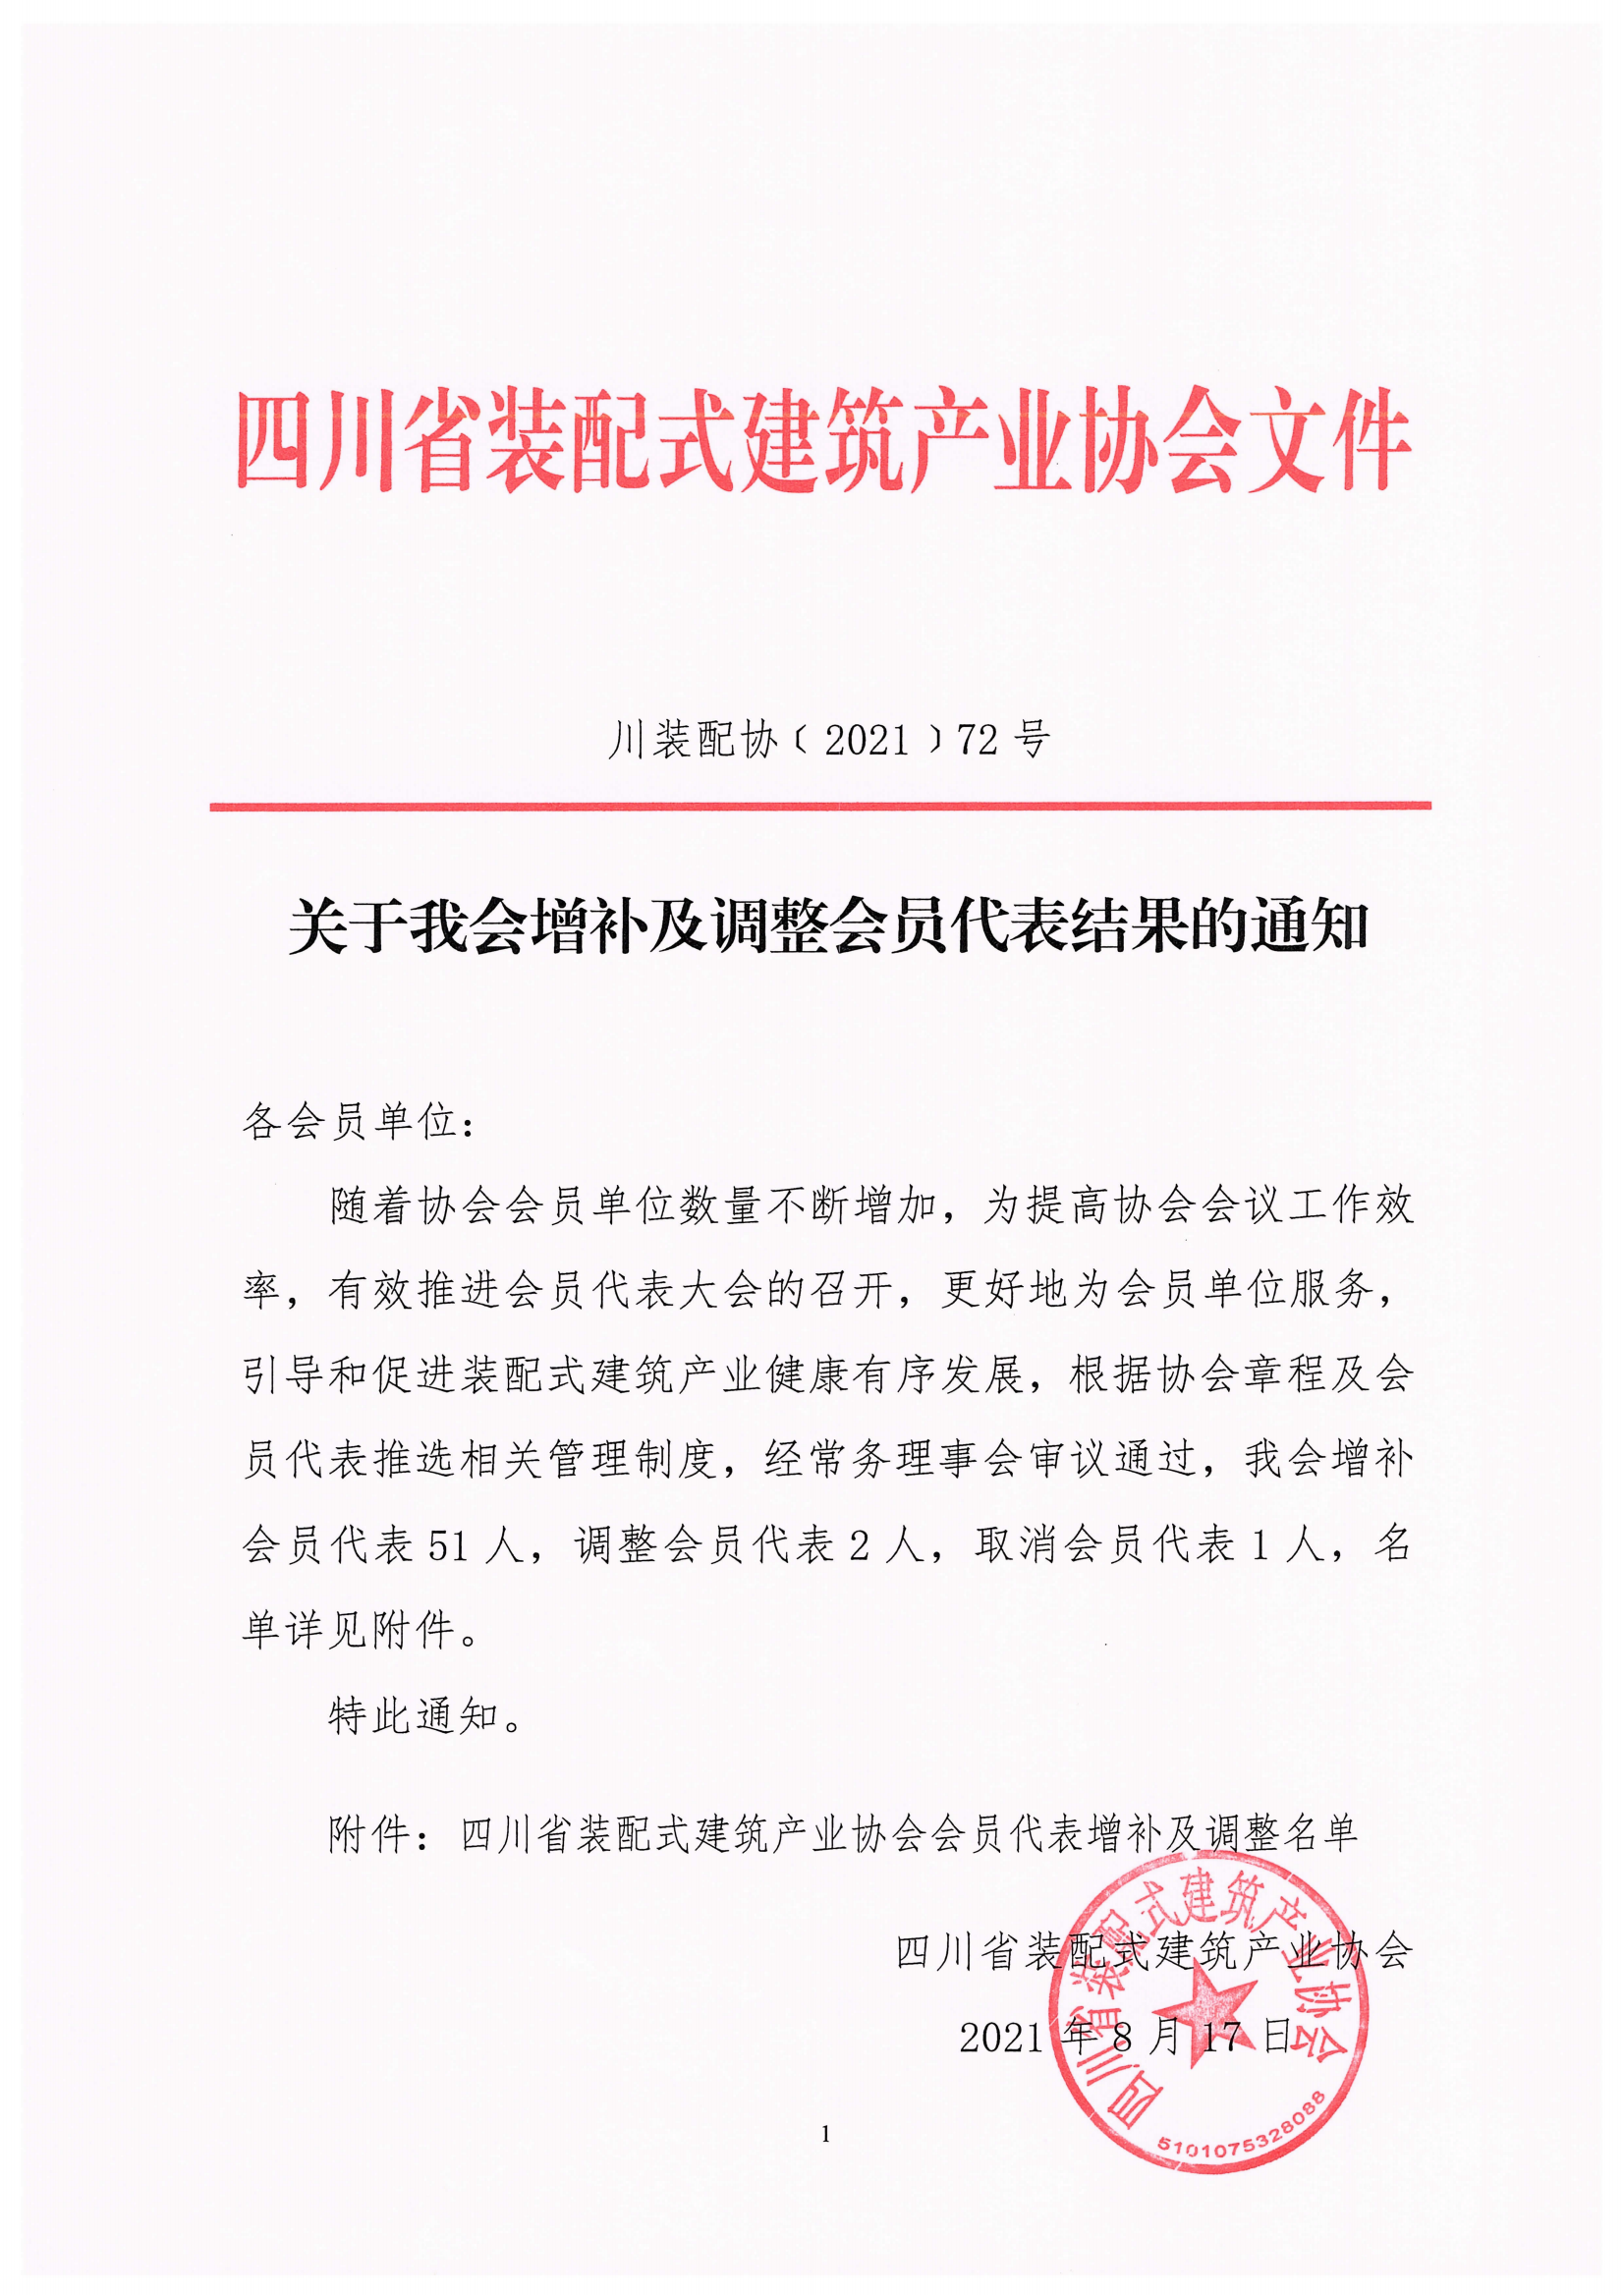 四川省装配式建筑产业协会关于增补及调整会员代表结果的通知_00.png